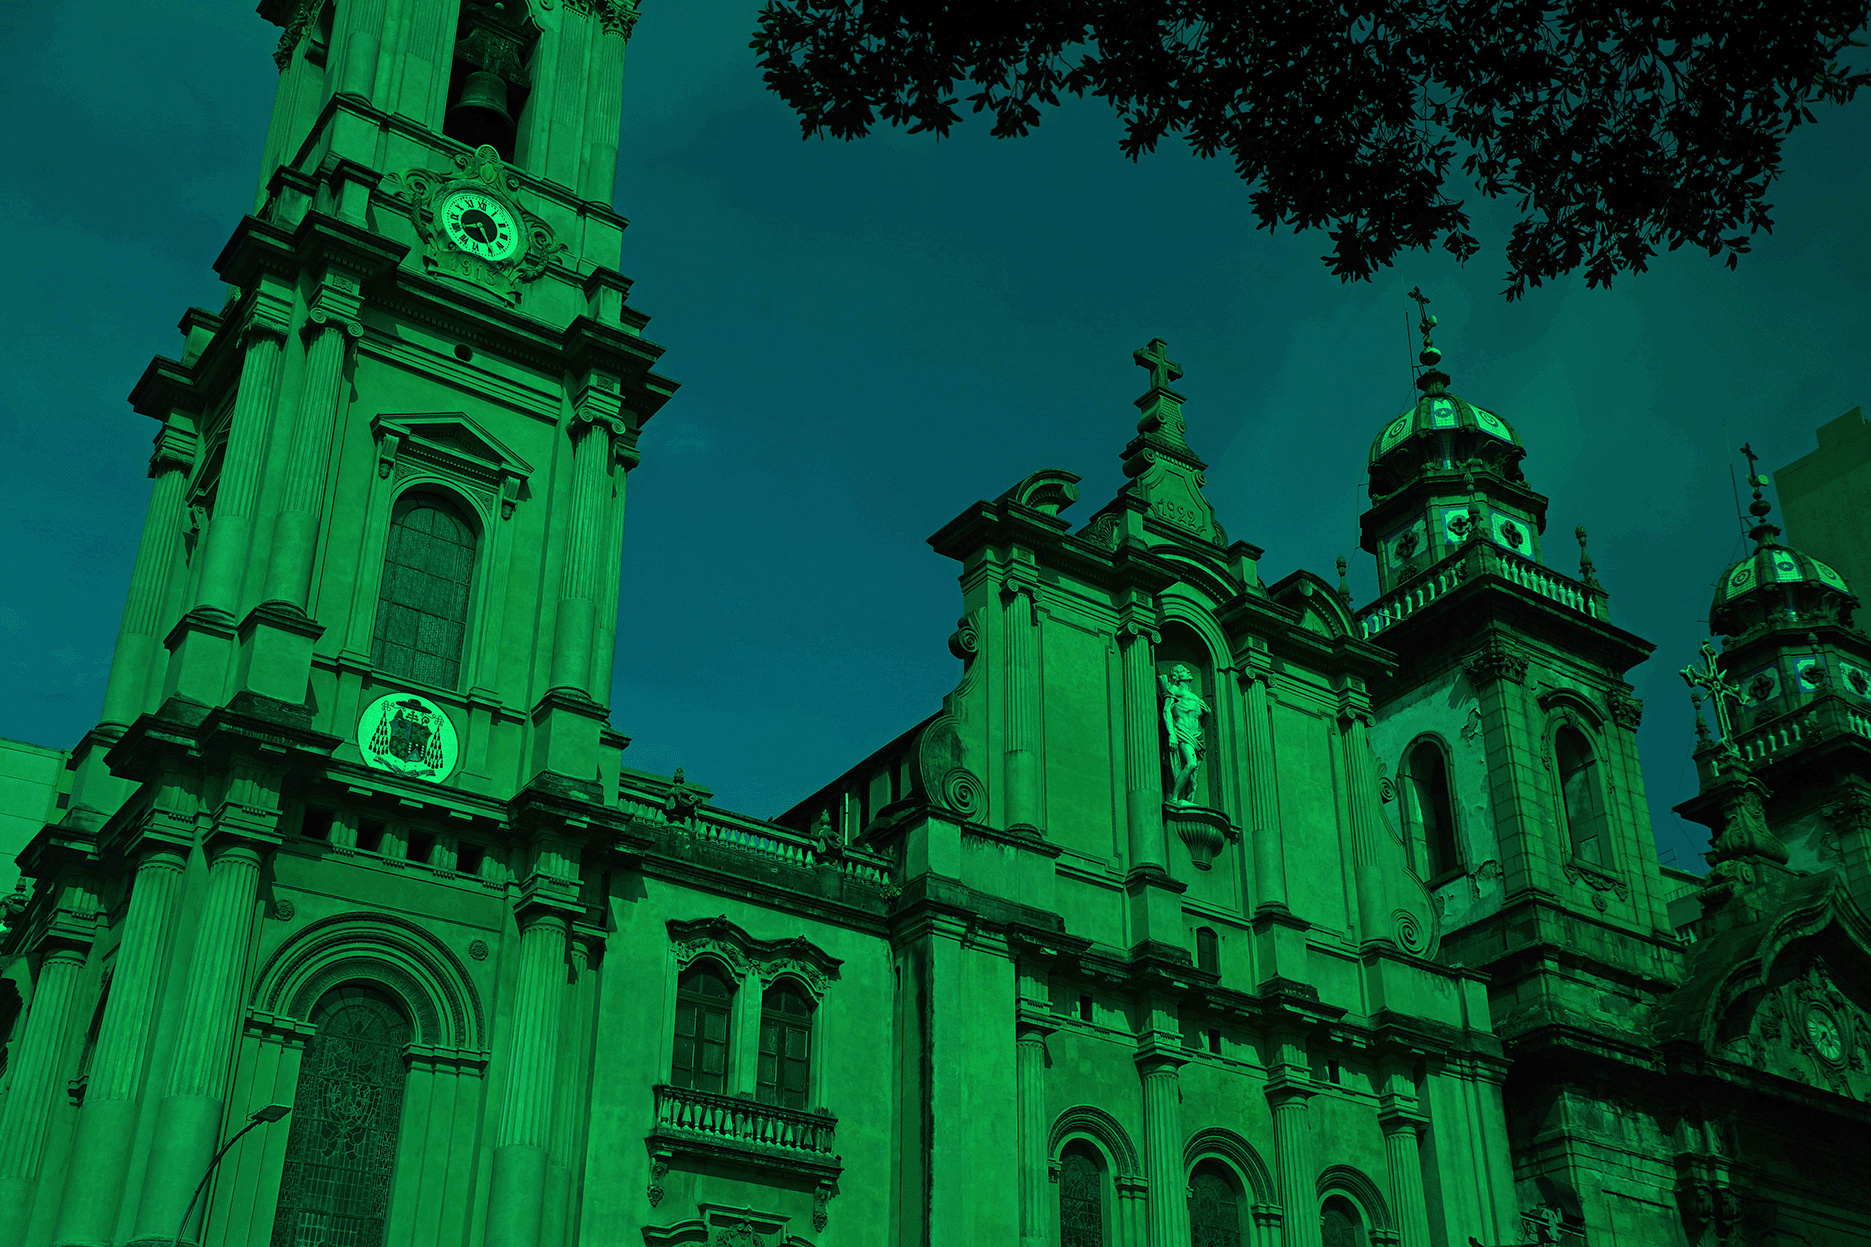 Sunday Churches #1 Antiga Sé - Rio de Janeiro